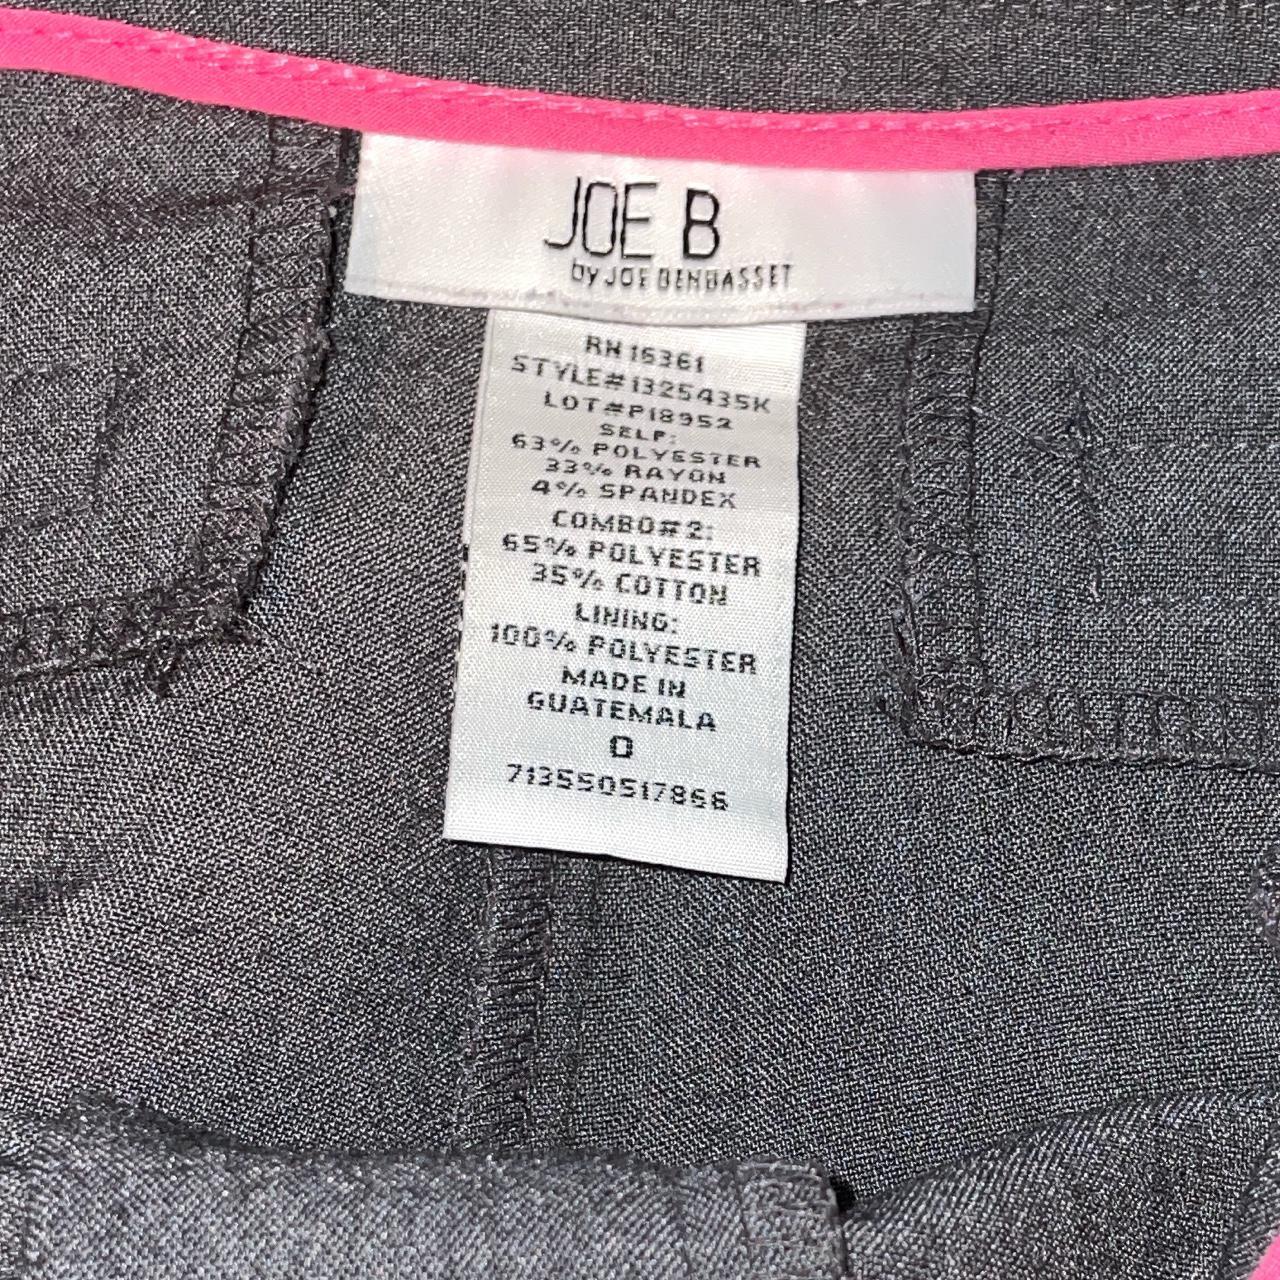 Joe B By Joe Benbasset Pants for Women - JCPenney